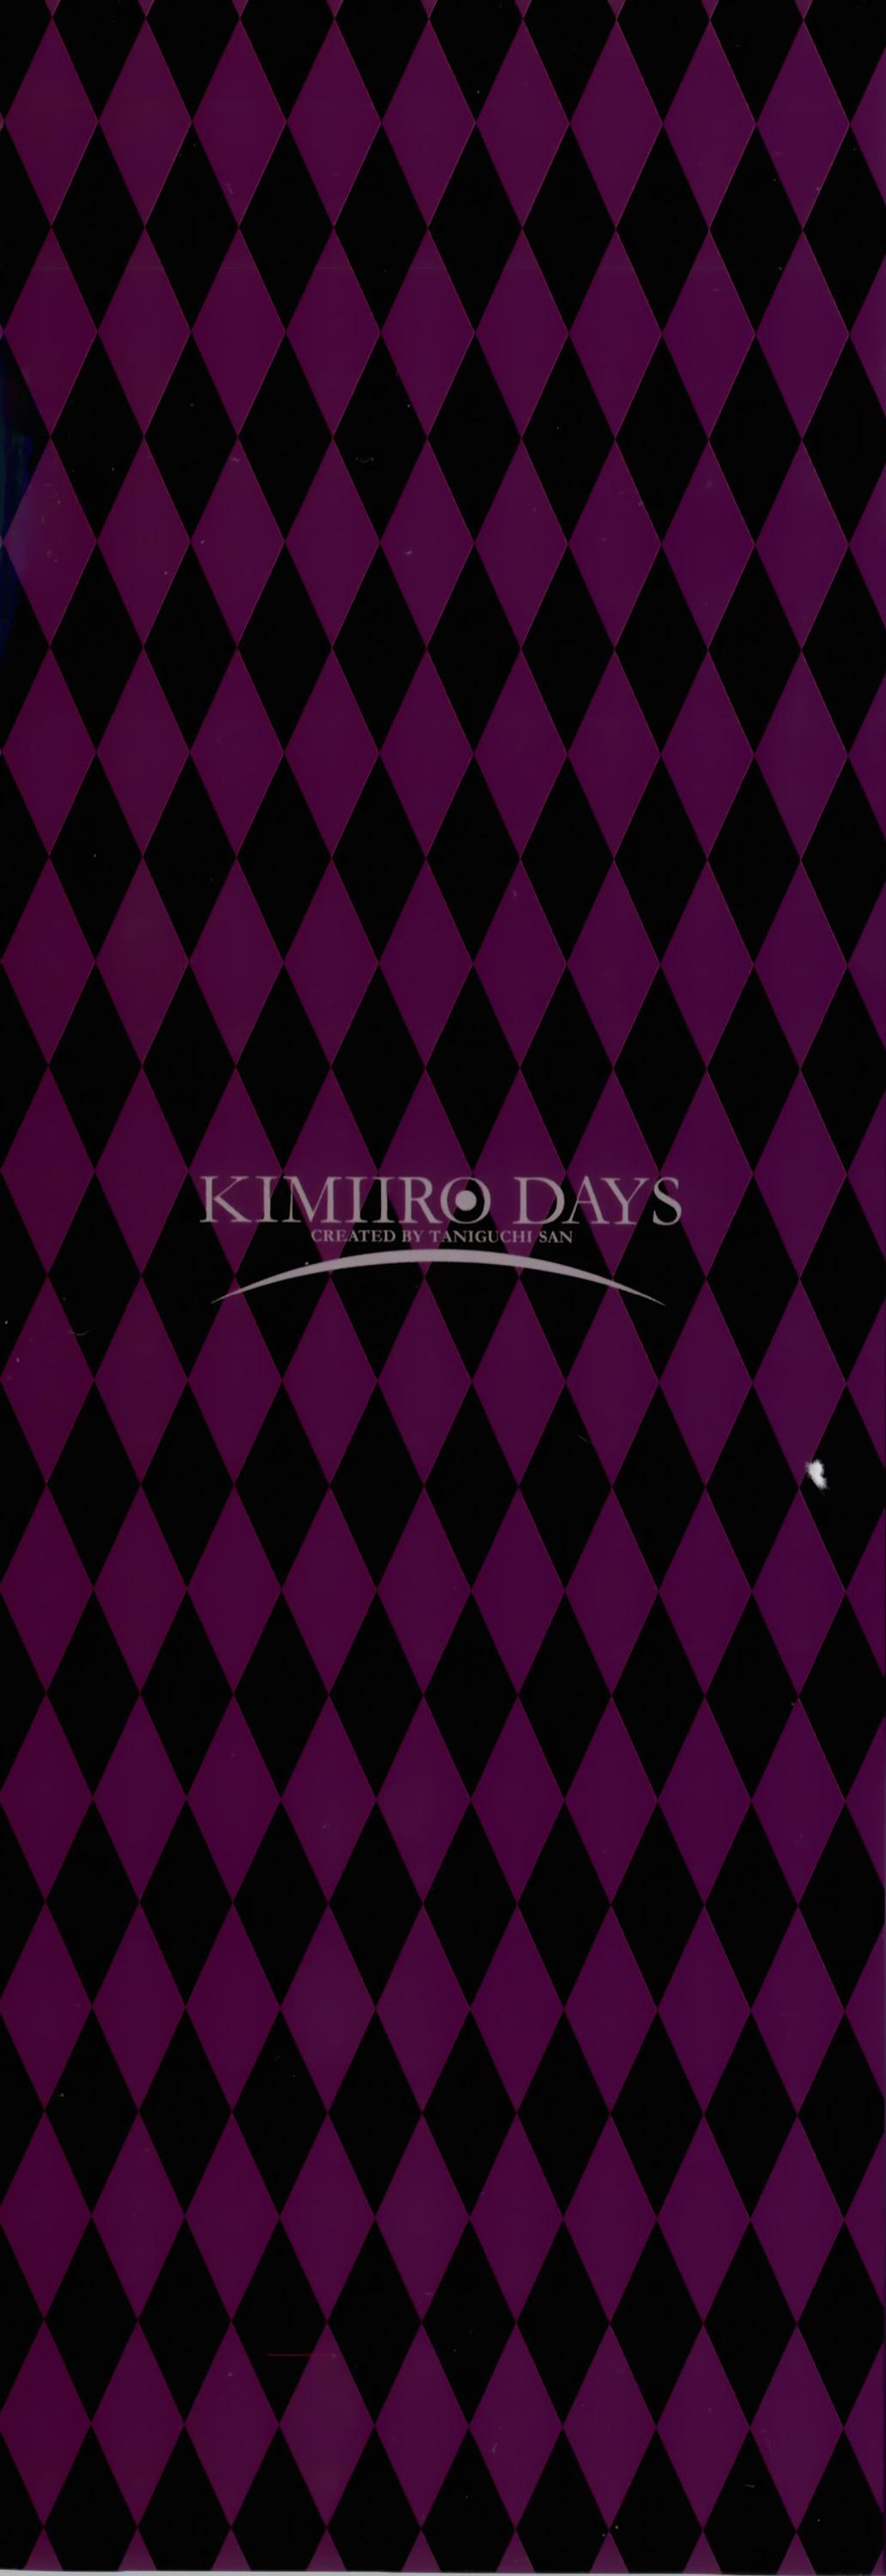 Viet Kimi-iro Days Inked - Page 6